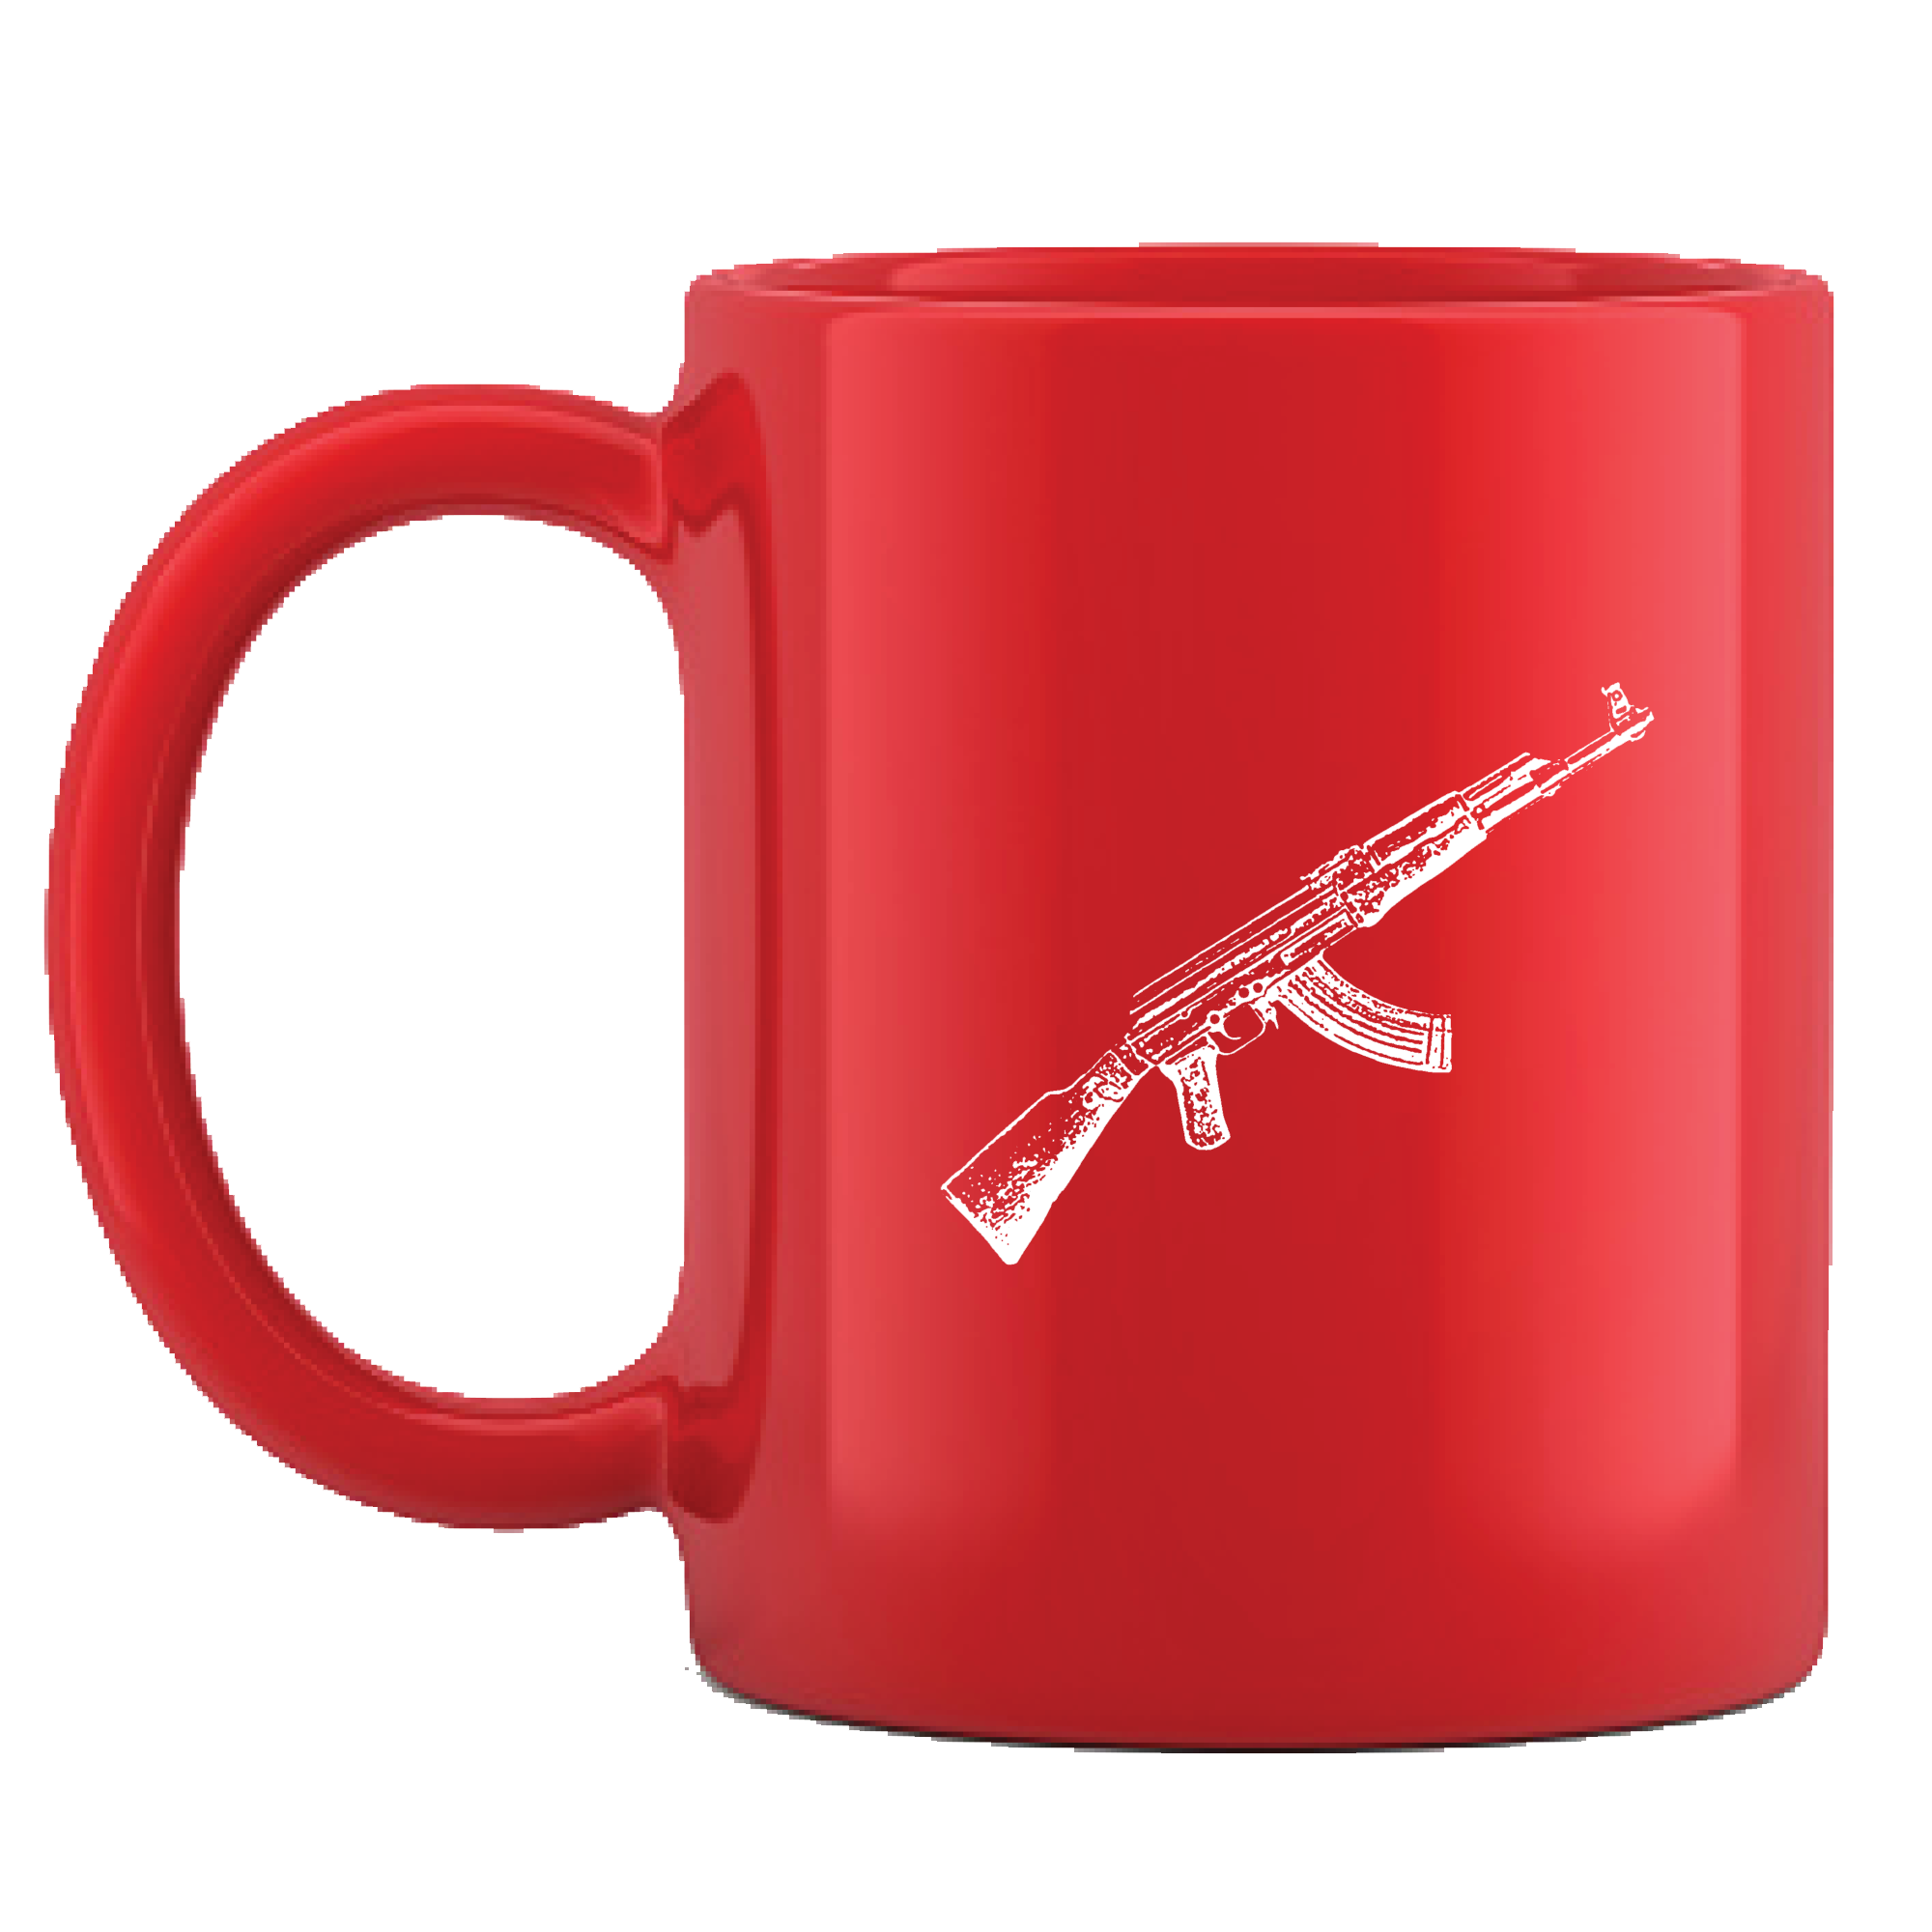 Koyo - Coffee Mug